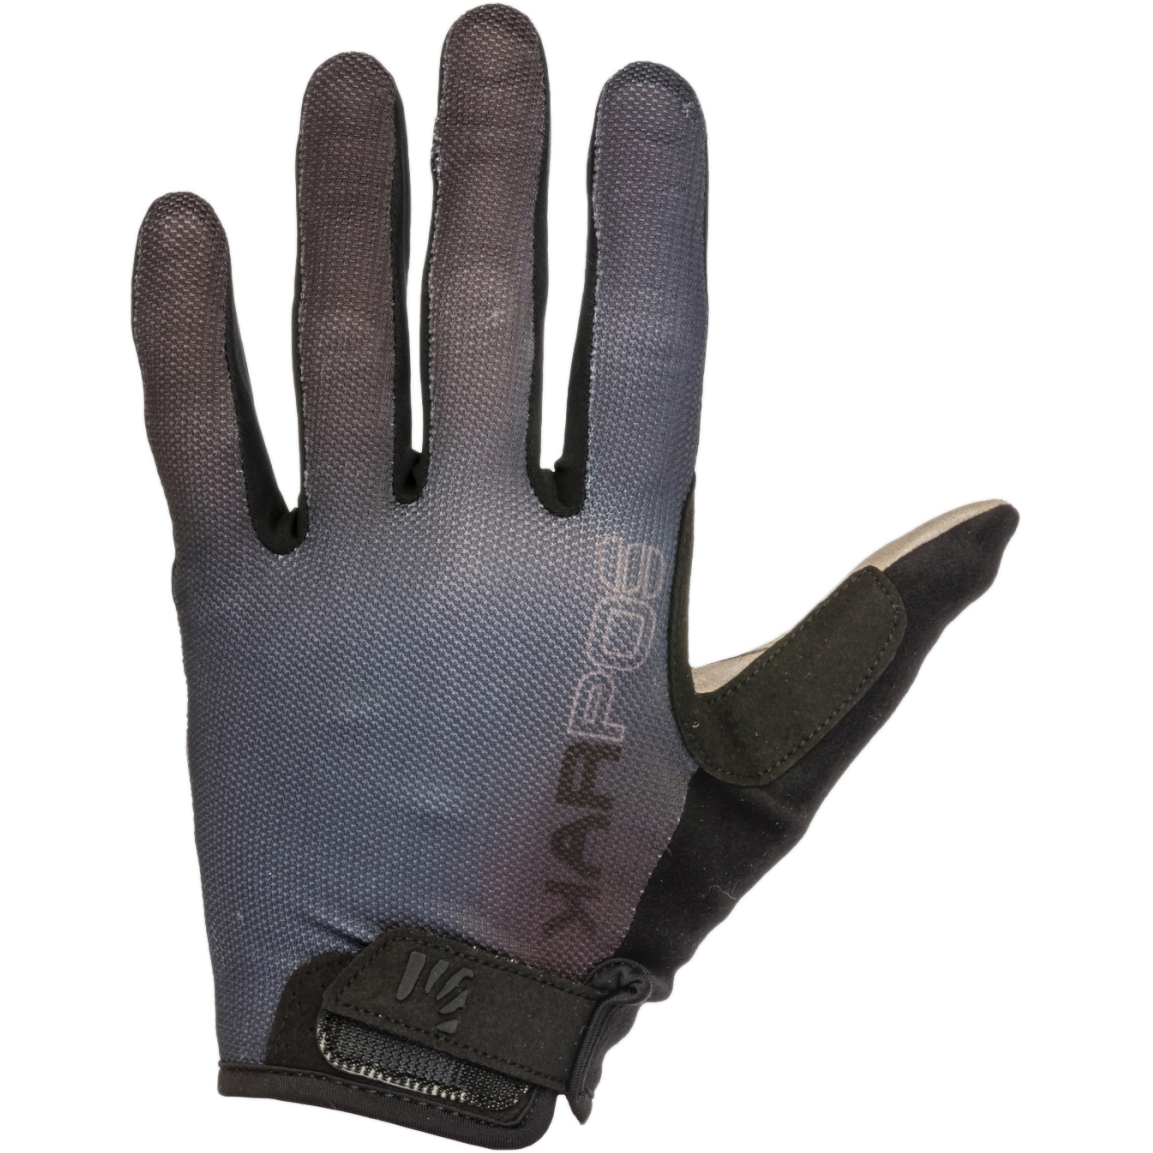 Productfoto van Karpos Federia MTB-Handschoenen - zwart